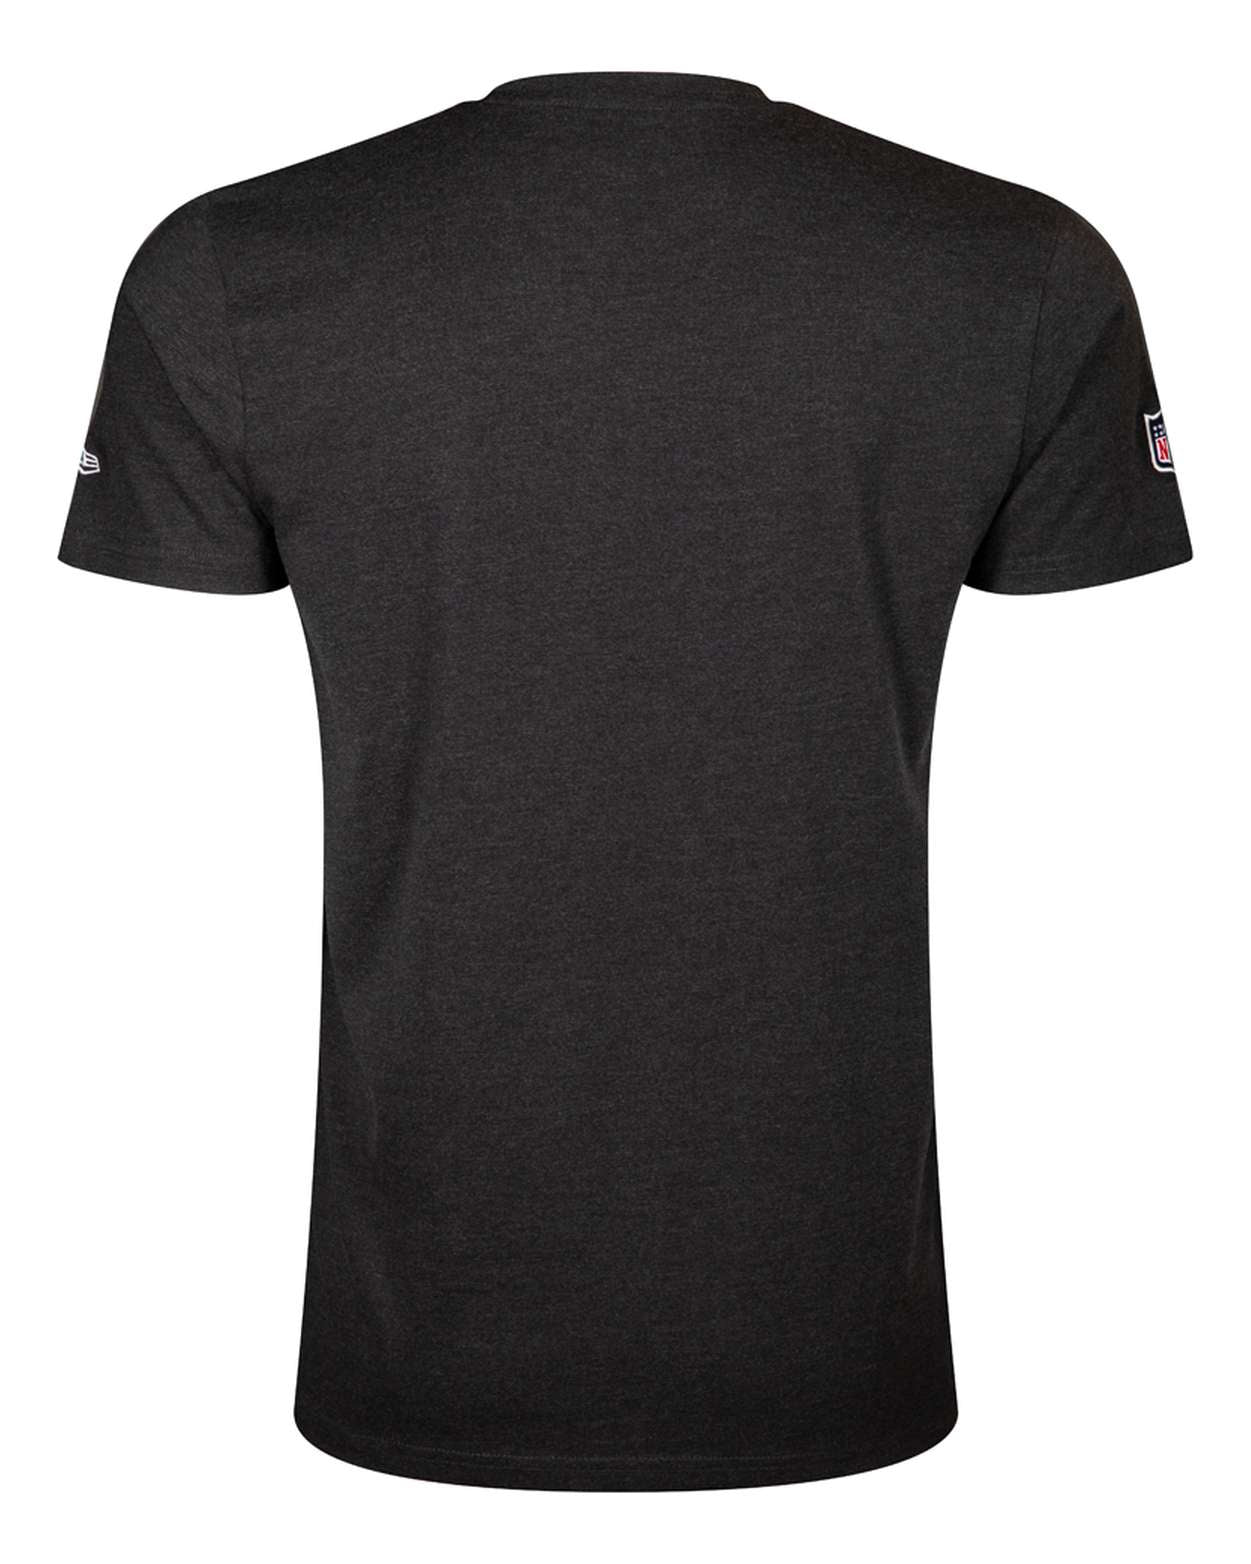 New Era - NFL New England Patriots Team Logo T-Shirt - Grau